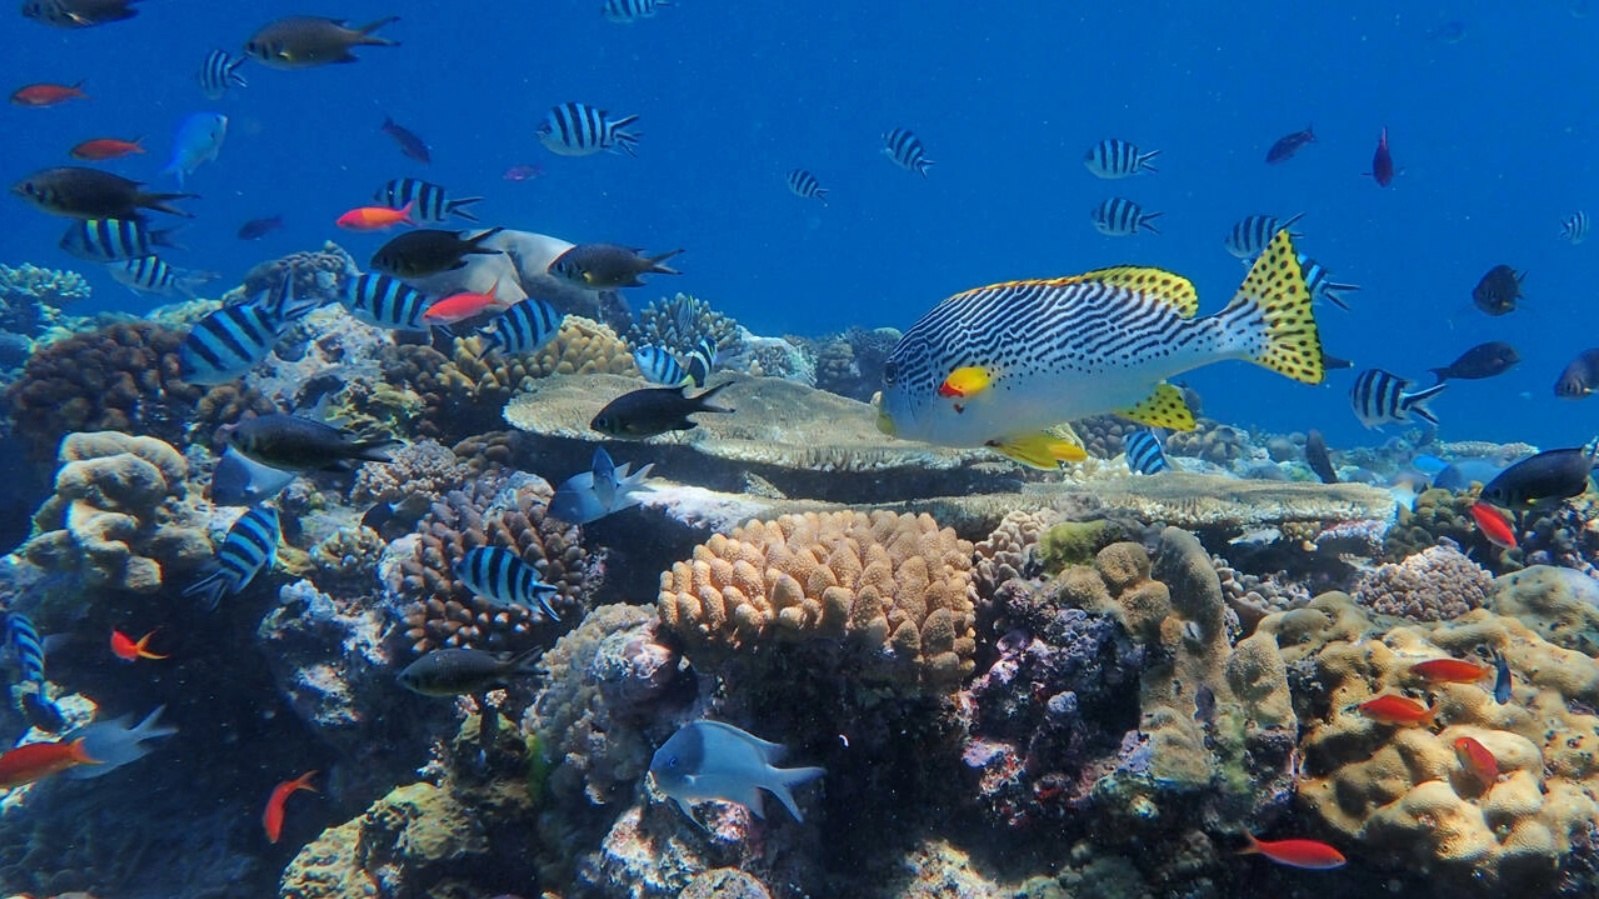 الحاجز المرجاني العظيم هو أكبر هيكل حي في العالم، يمكن رؤيته من الفضاء